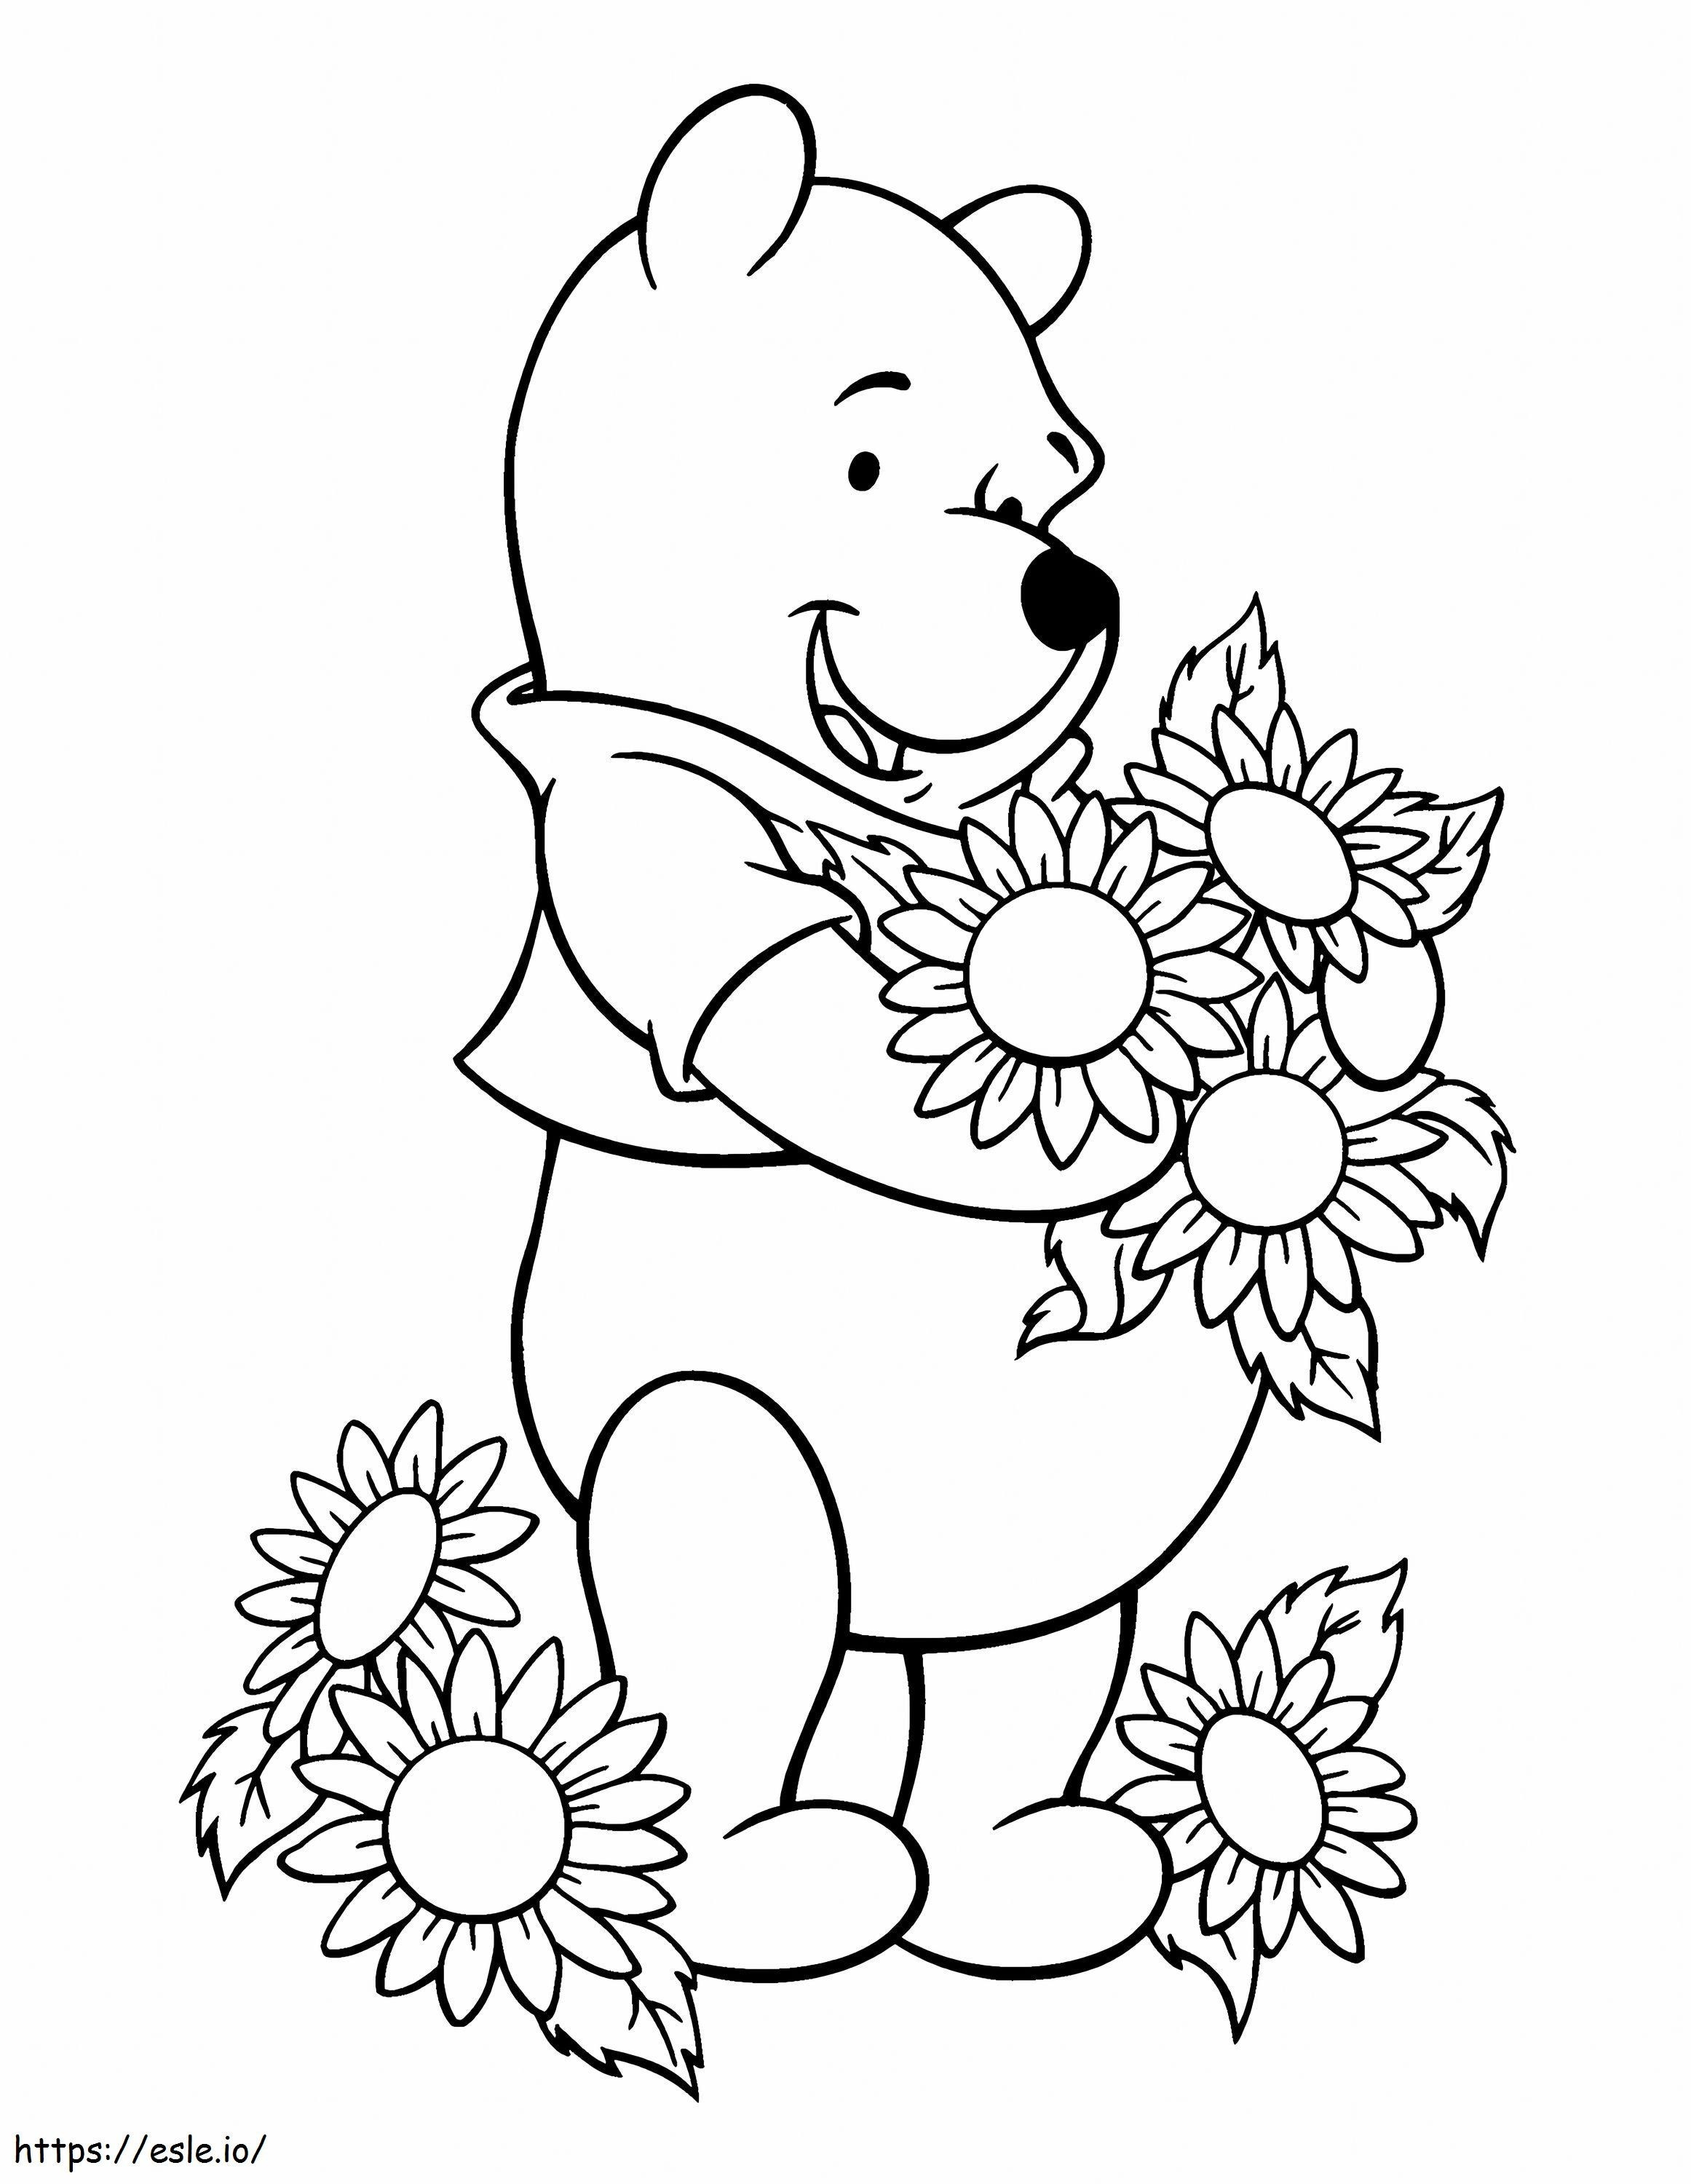 1530934715 Pooh e fiori A4 in scala 2 da colorare